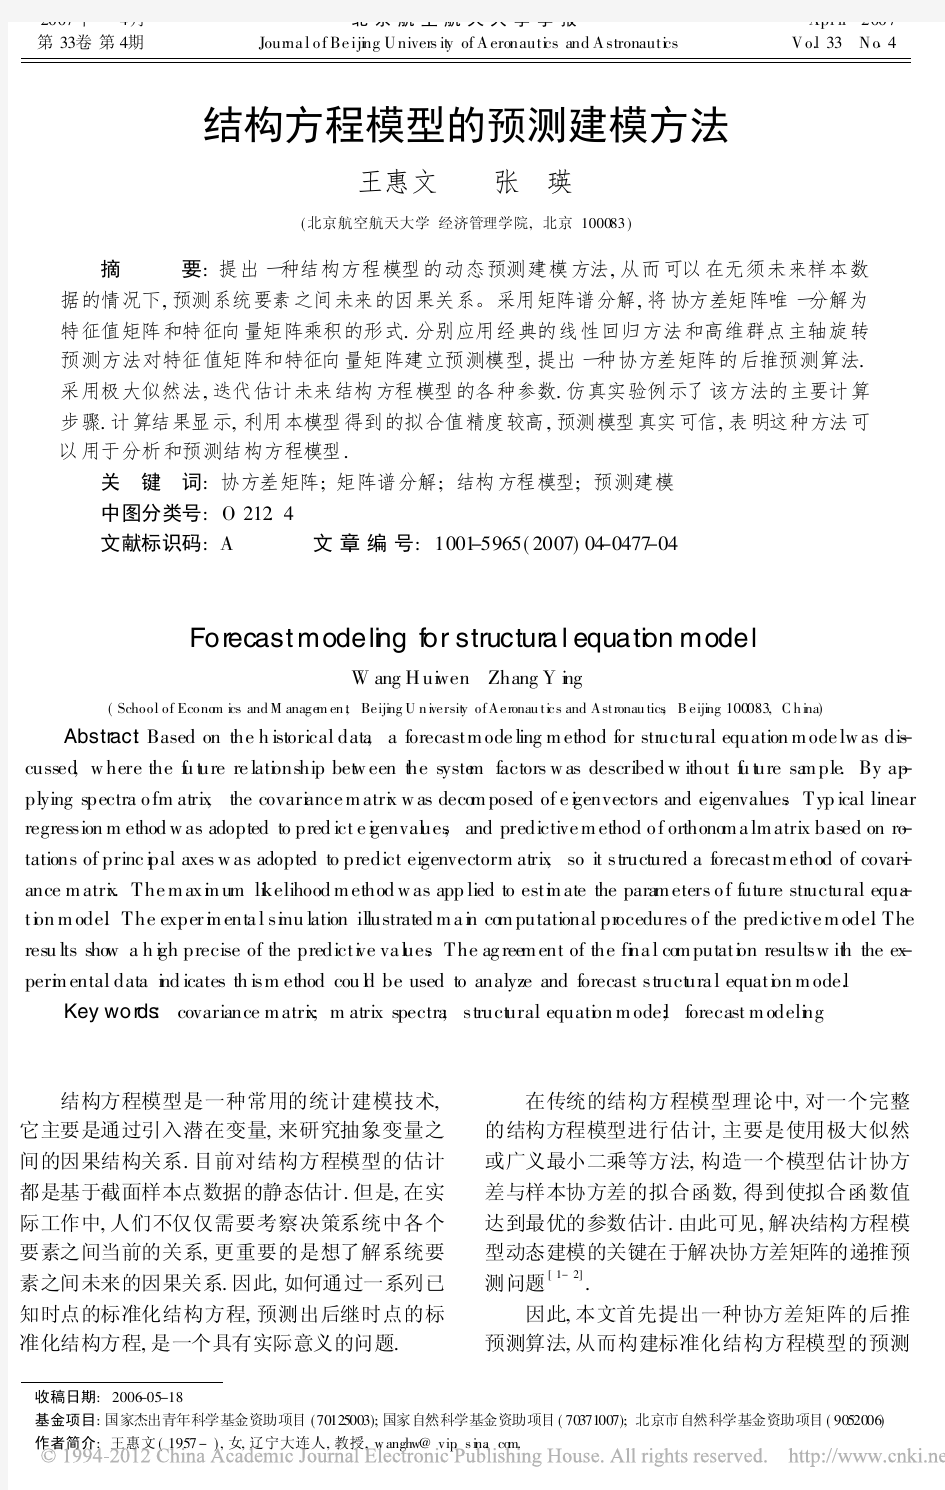 结构方程模型的预测建模方法_王惠文